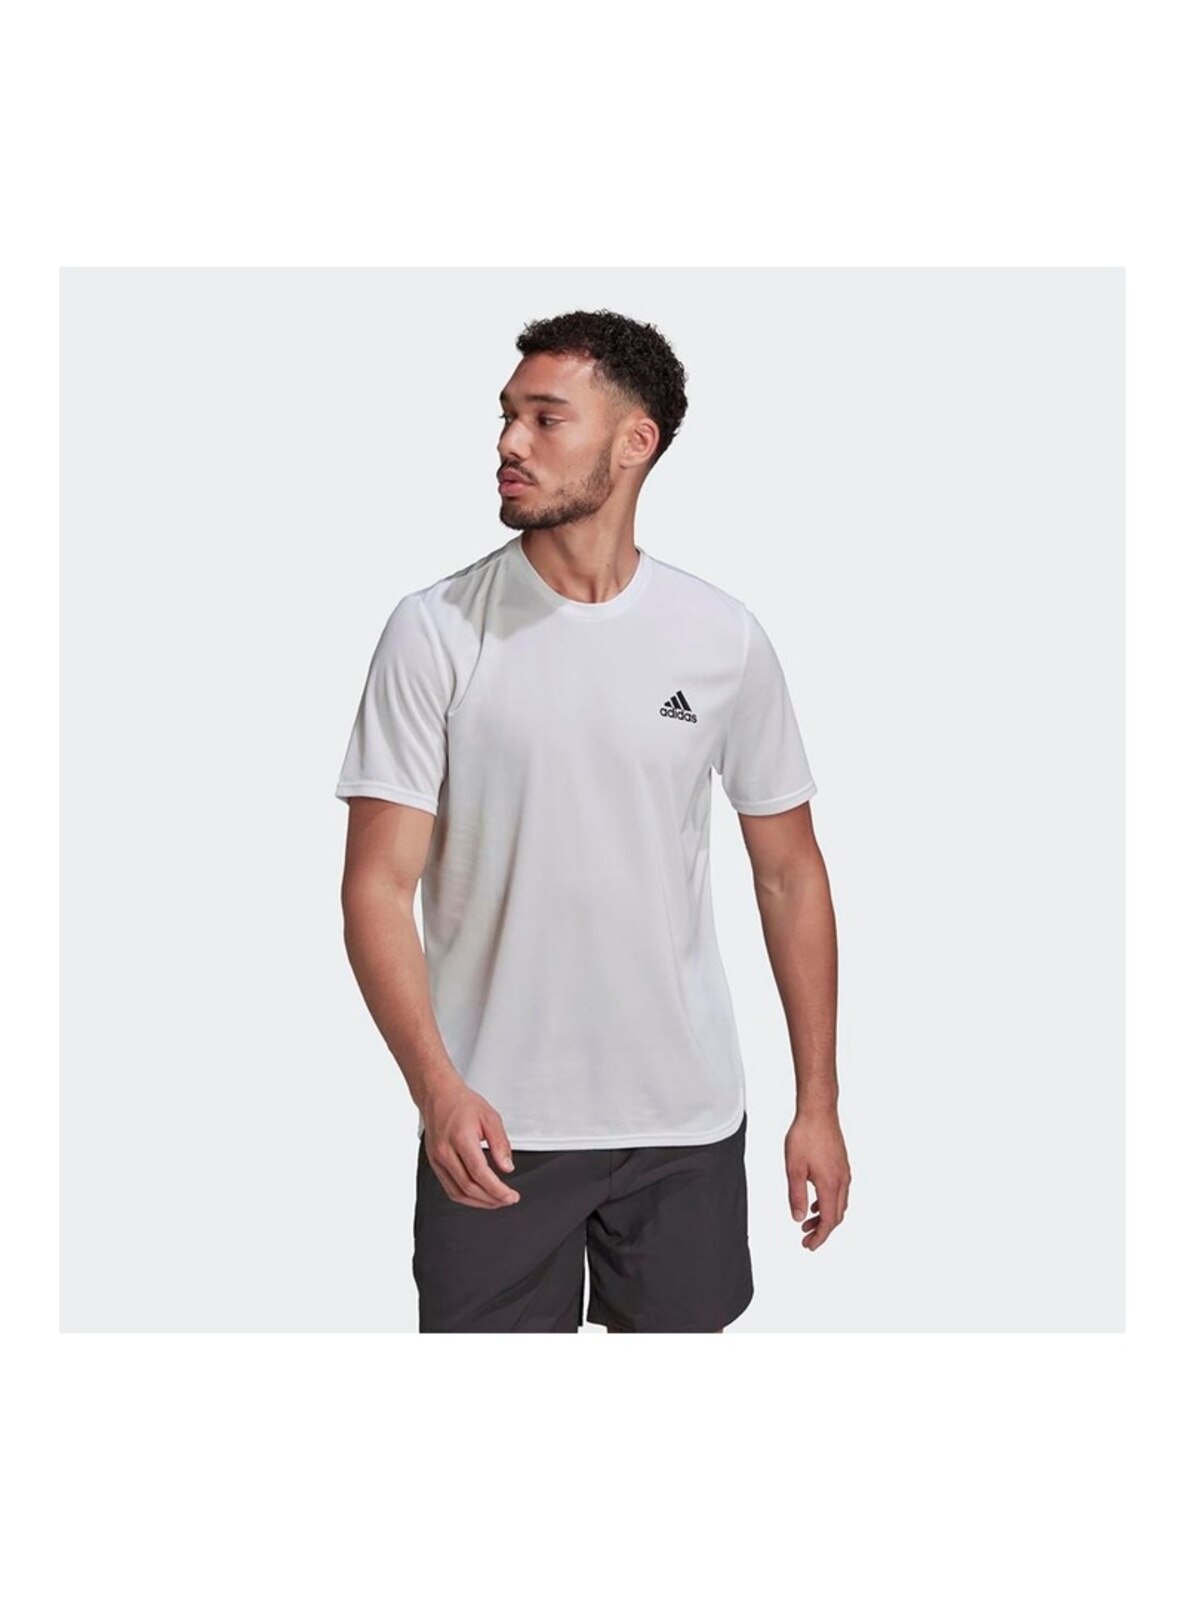 White - Sports T-Shirt